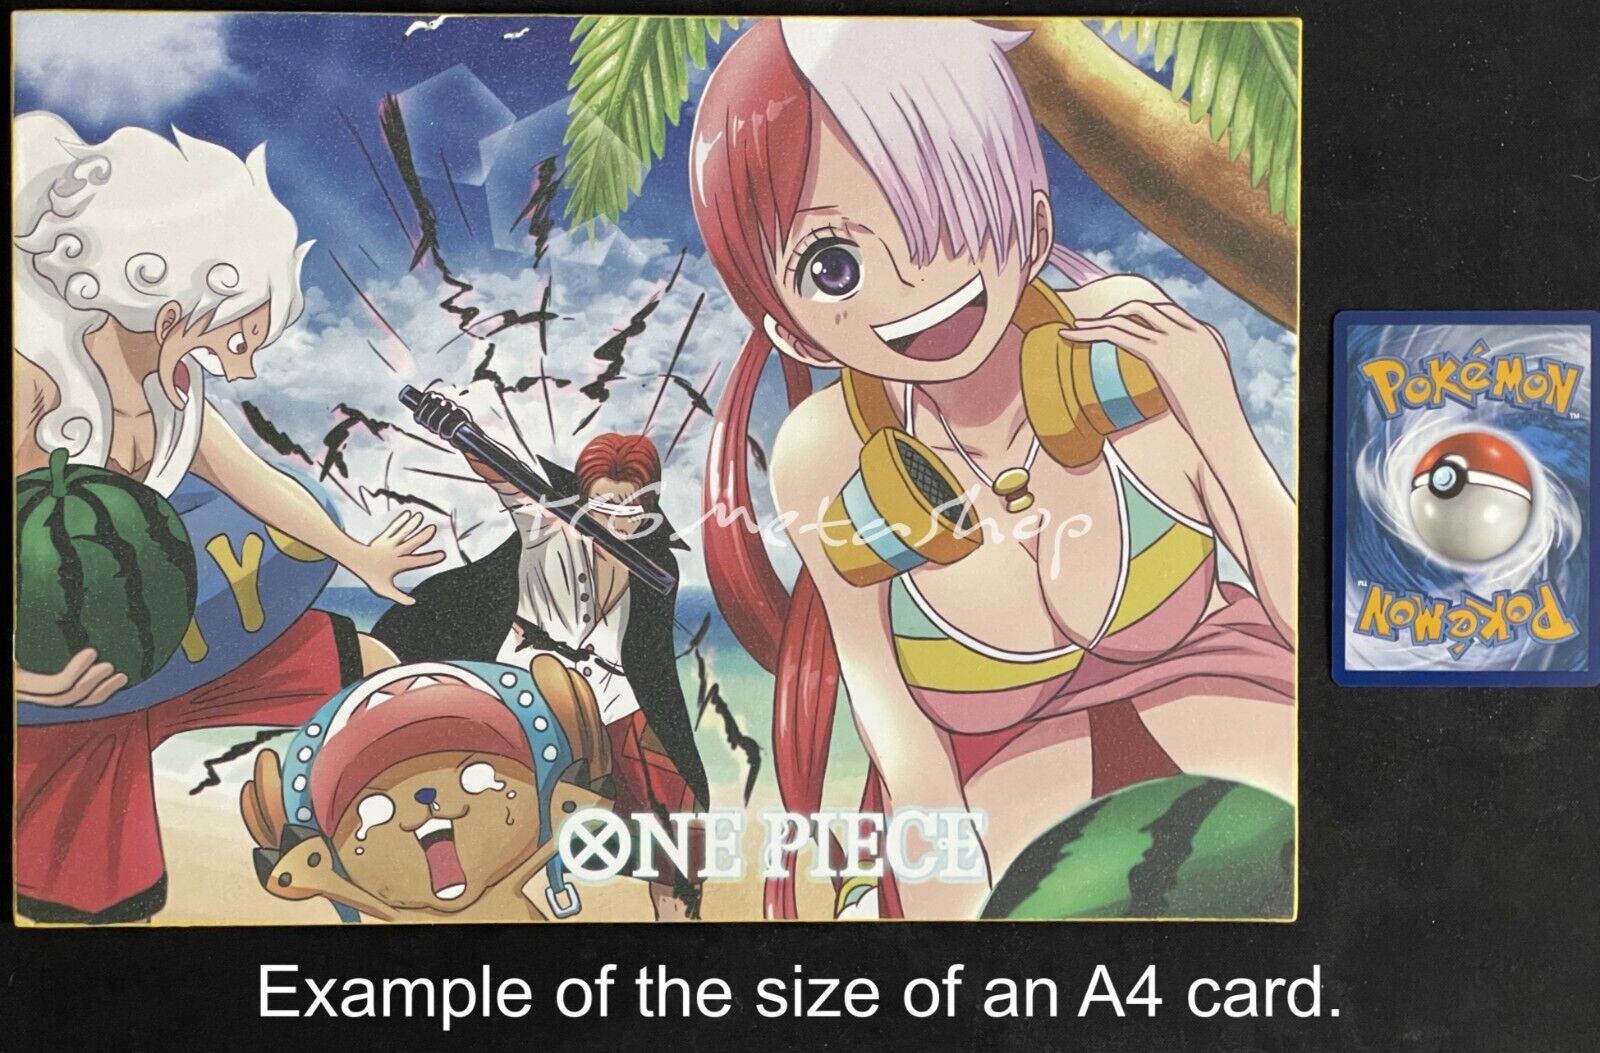 🔥 Uta One Piece Goddess Story Anime Waifu A4 Card SP 14 🔥